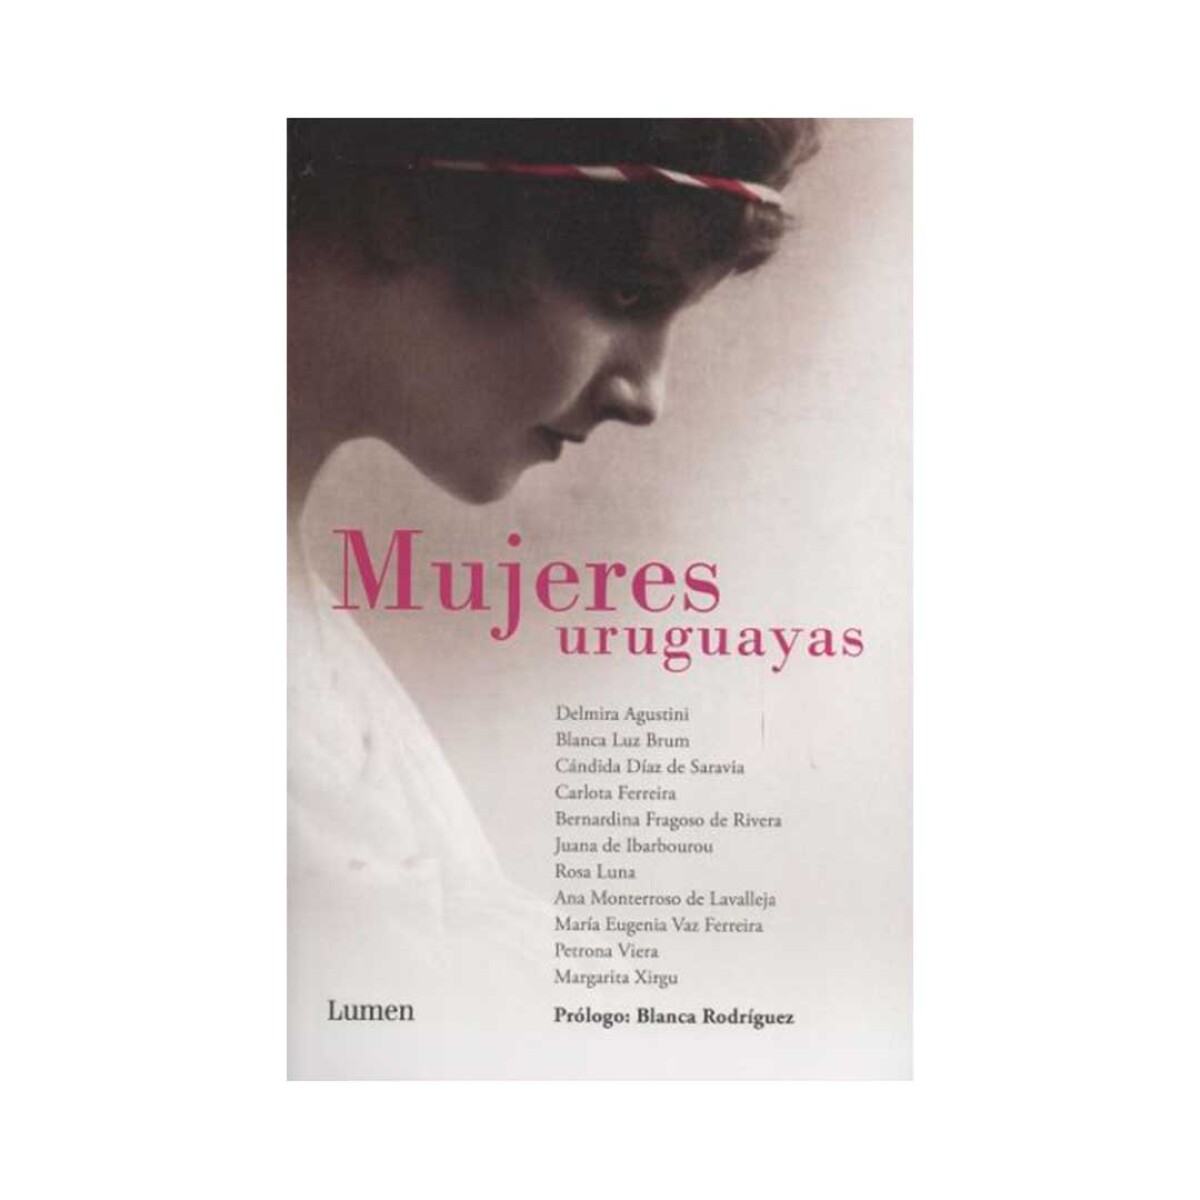 Libro mujeres uruguayas talentosas - 001 